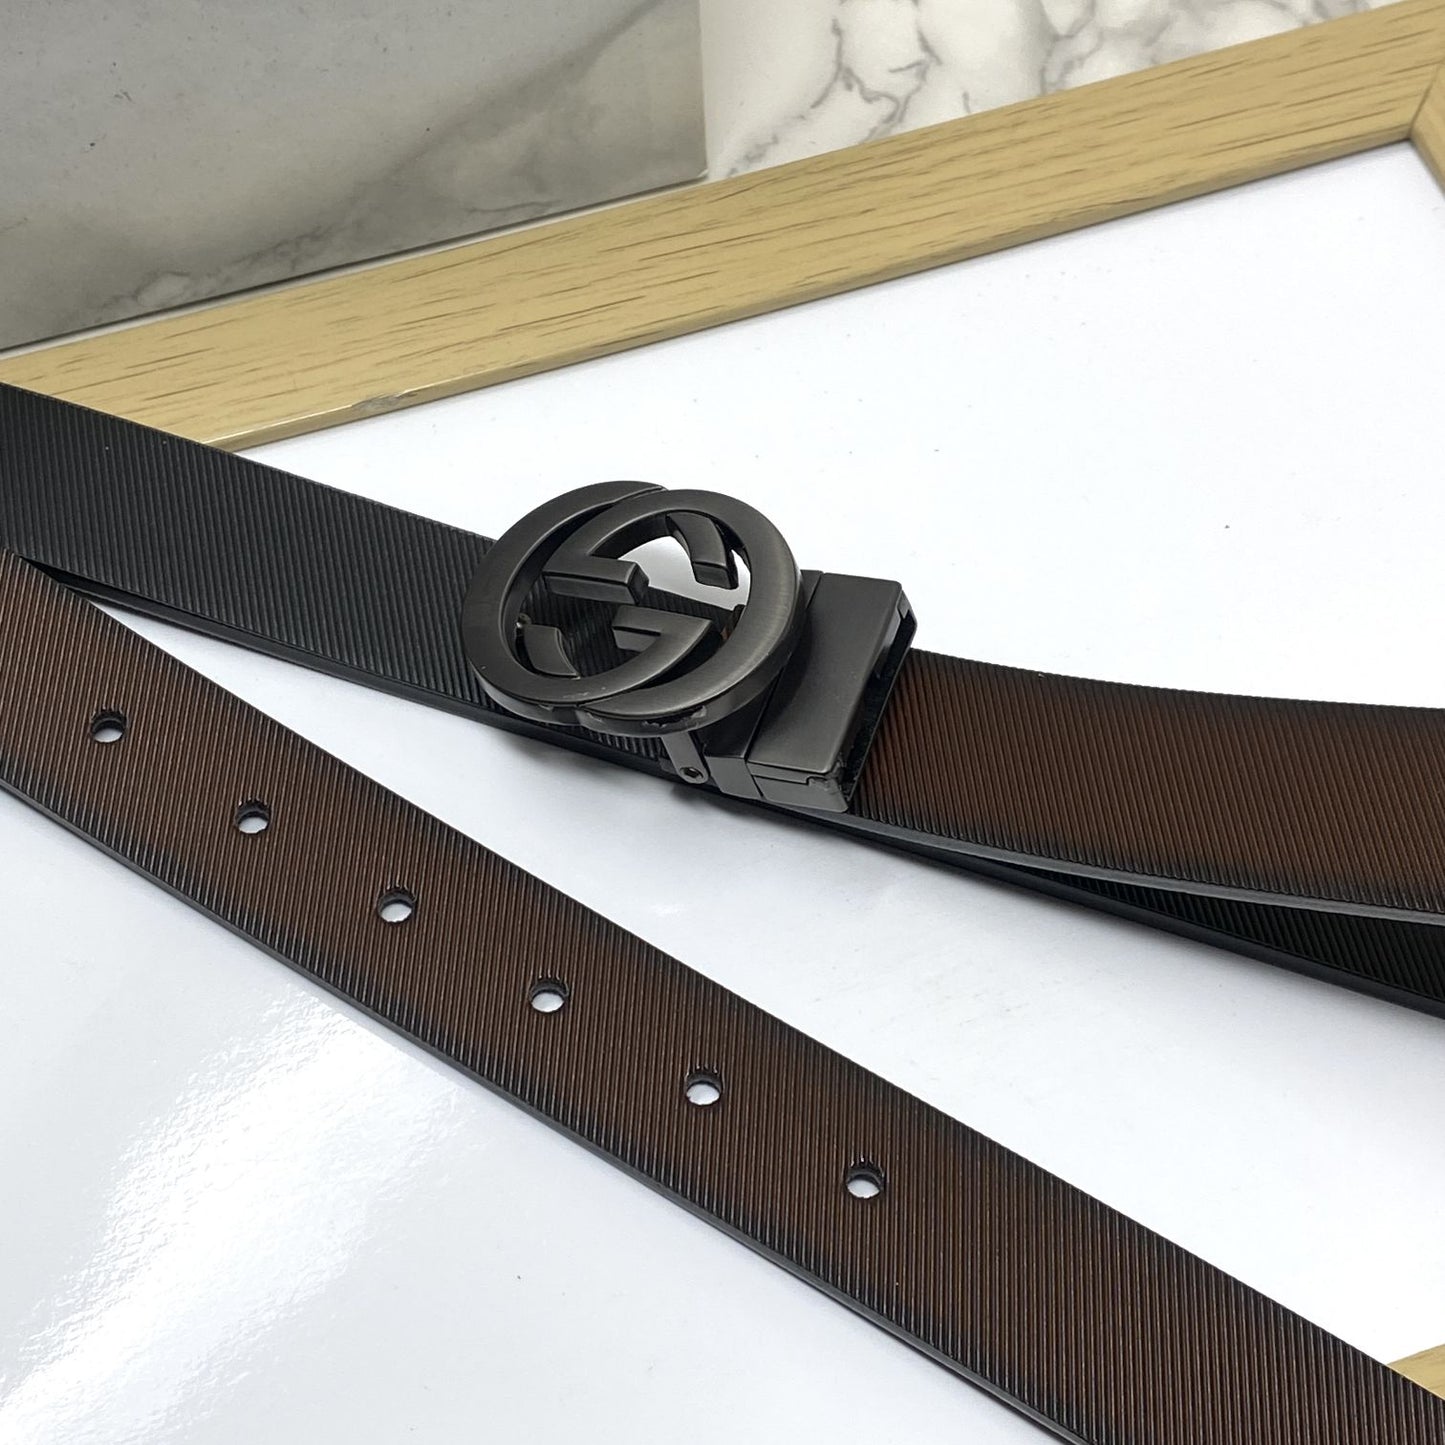 Classic Design Reversible Strap Belt For Men-JonasParamount